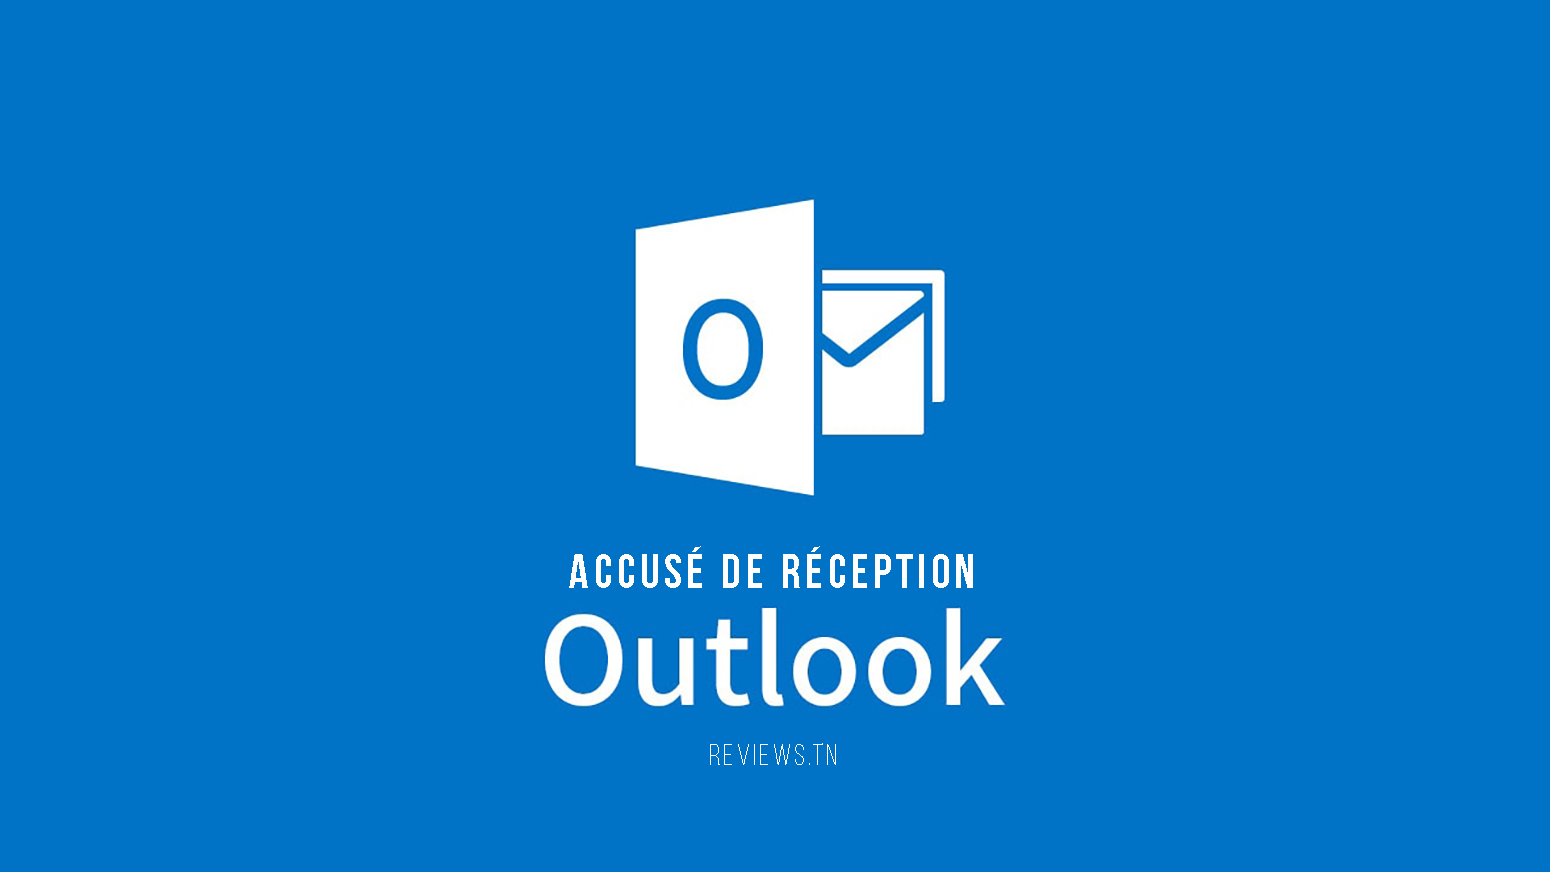 Outlook တွင် လက်ခံပြေစာ၏ အသိအမှတ်ပြုမှုကို မည်သို့ရယူရမည်နည်း။ (လမ်းညွှန် 2022)